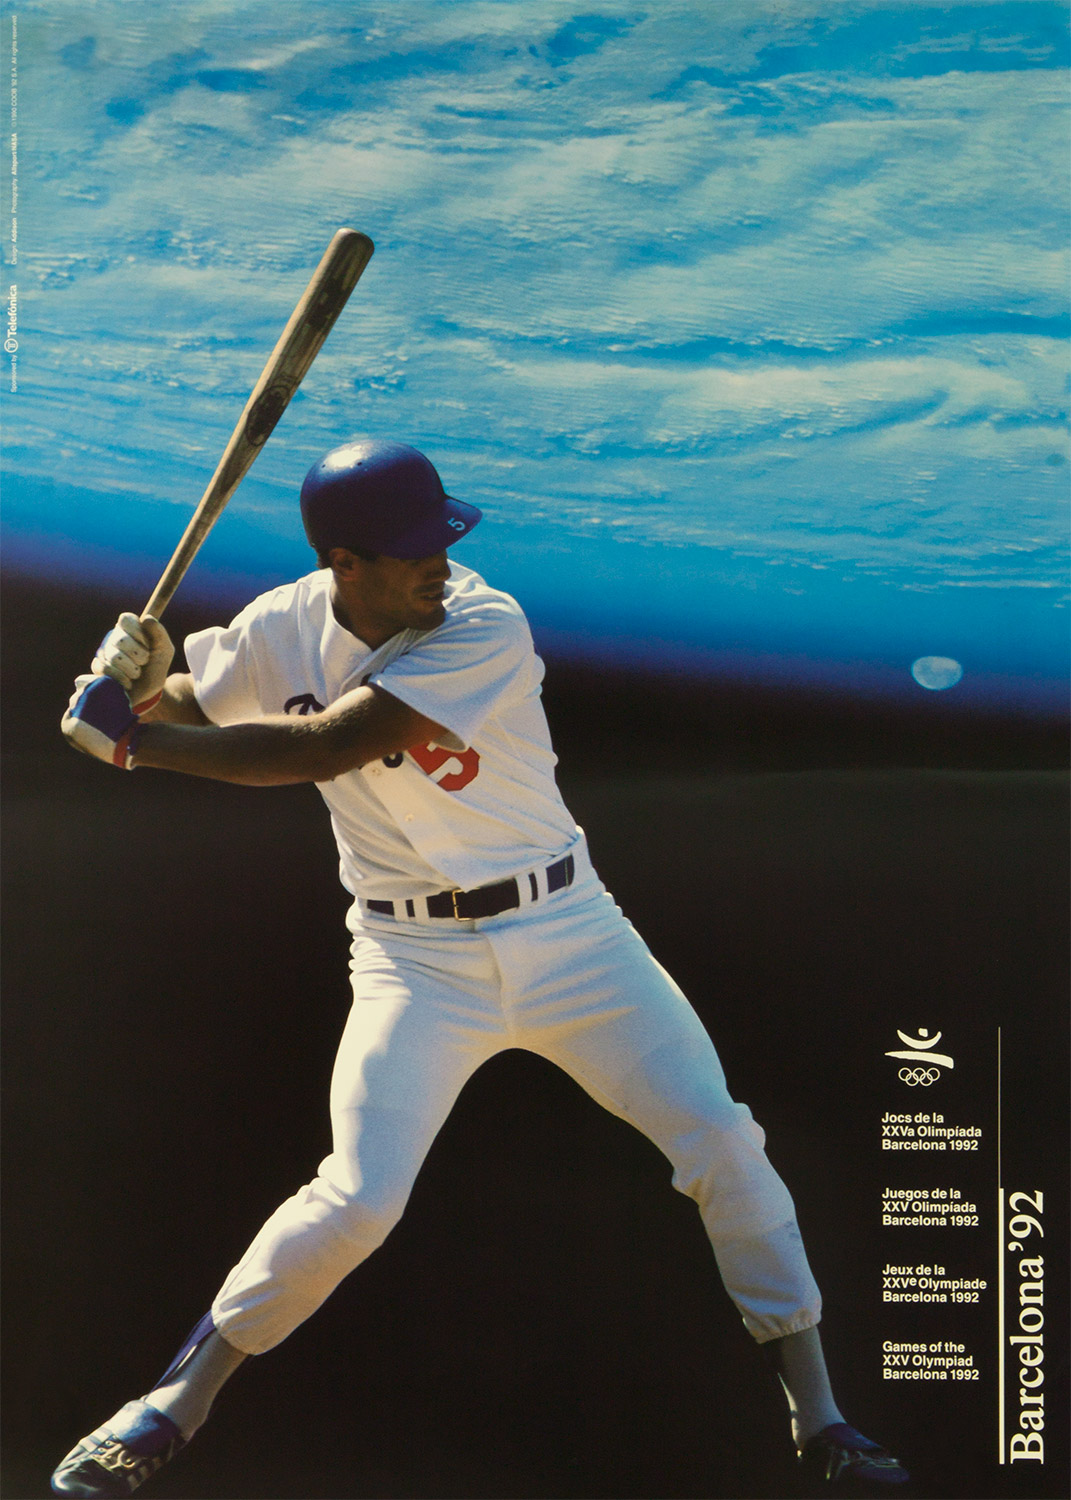 Plakat mit Abbildung eines Baseballspielers. Im Hintergrund der Planet Erde